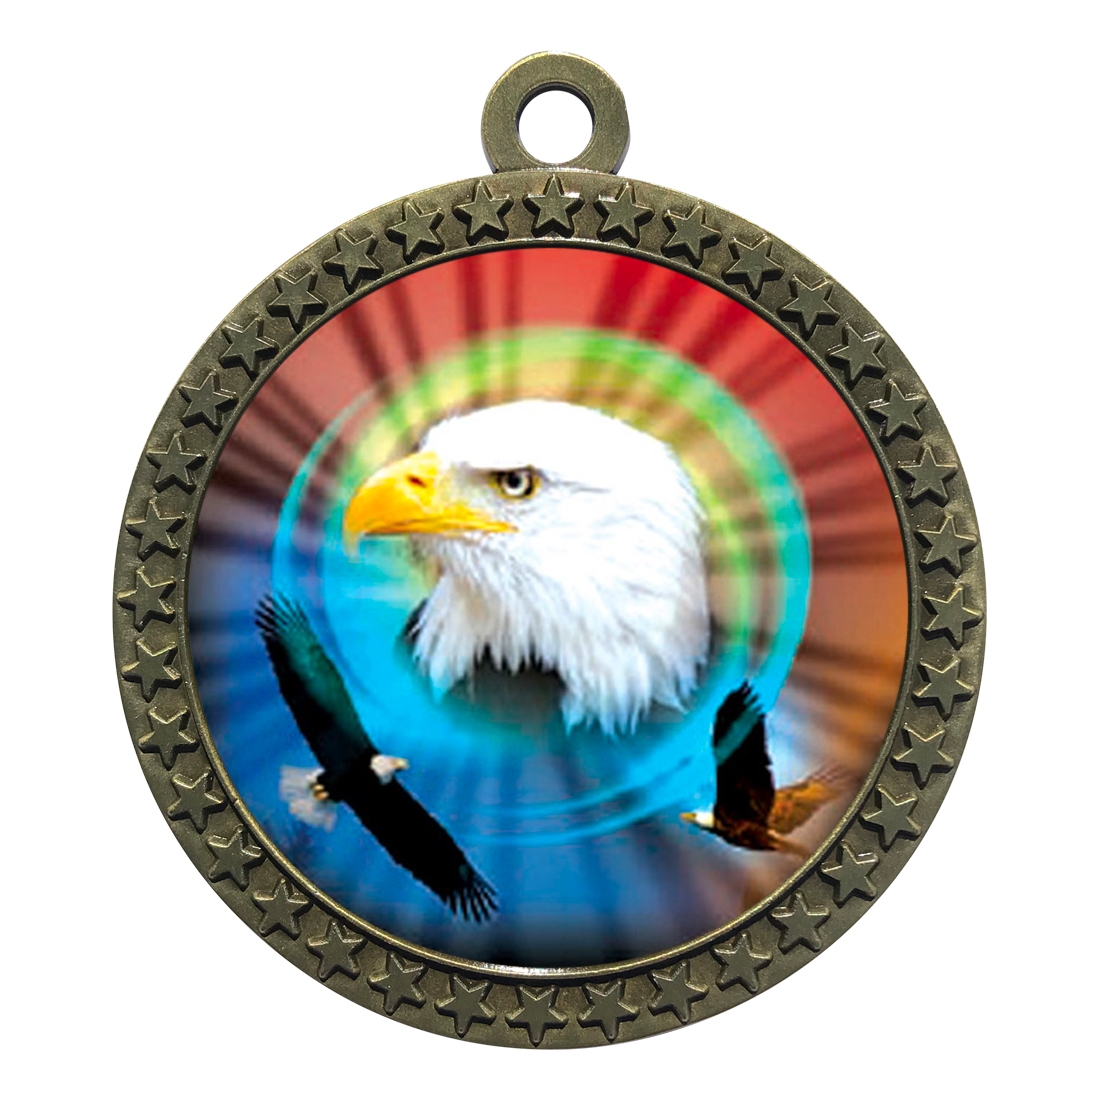 2-1/2" Eagle Medal